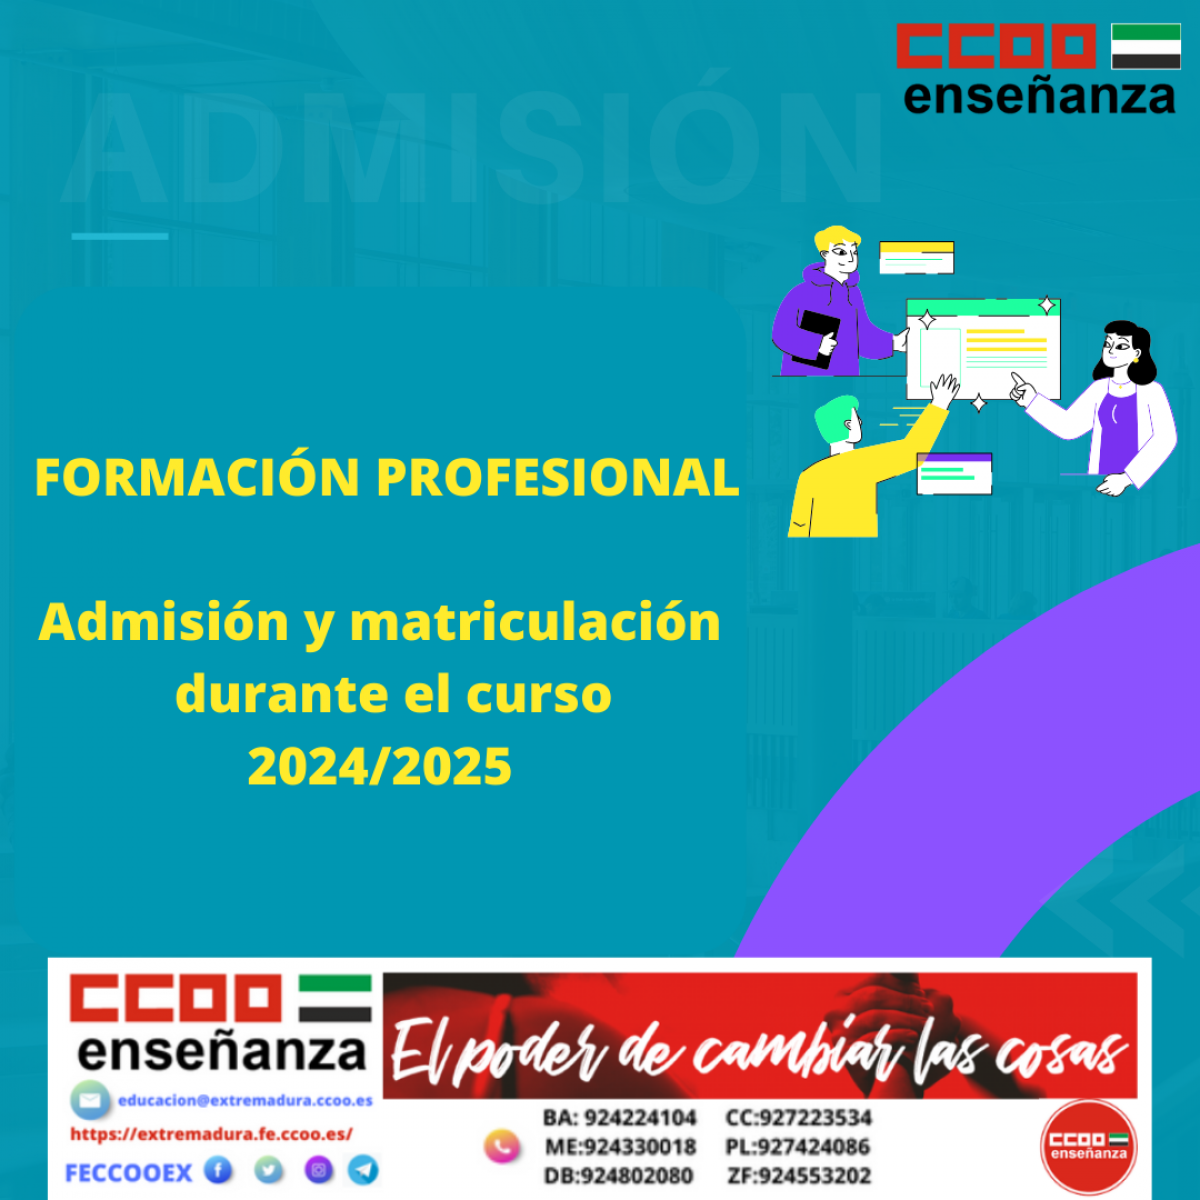 Admision y matriculacin en FP para curso 2024/2025